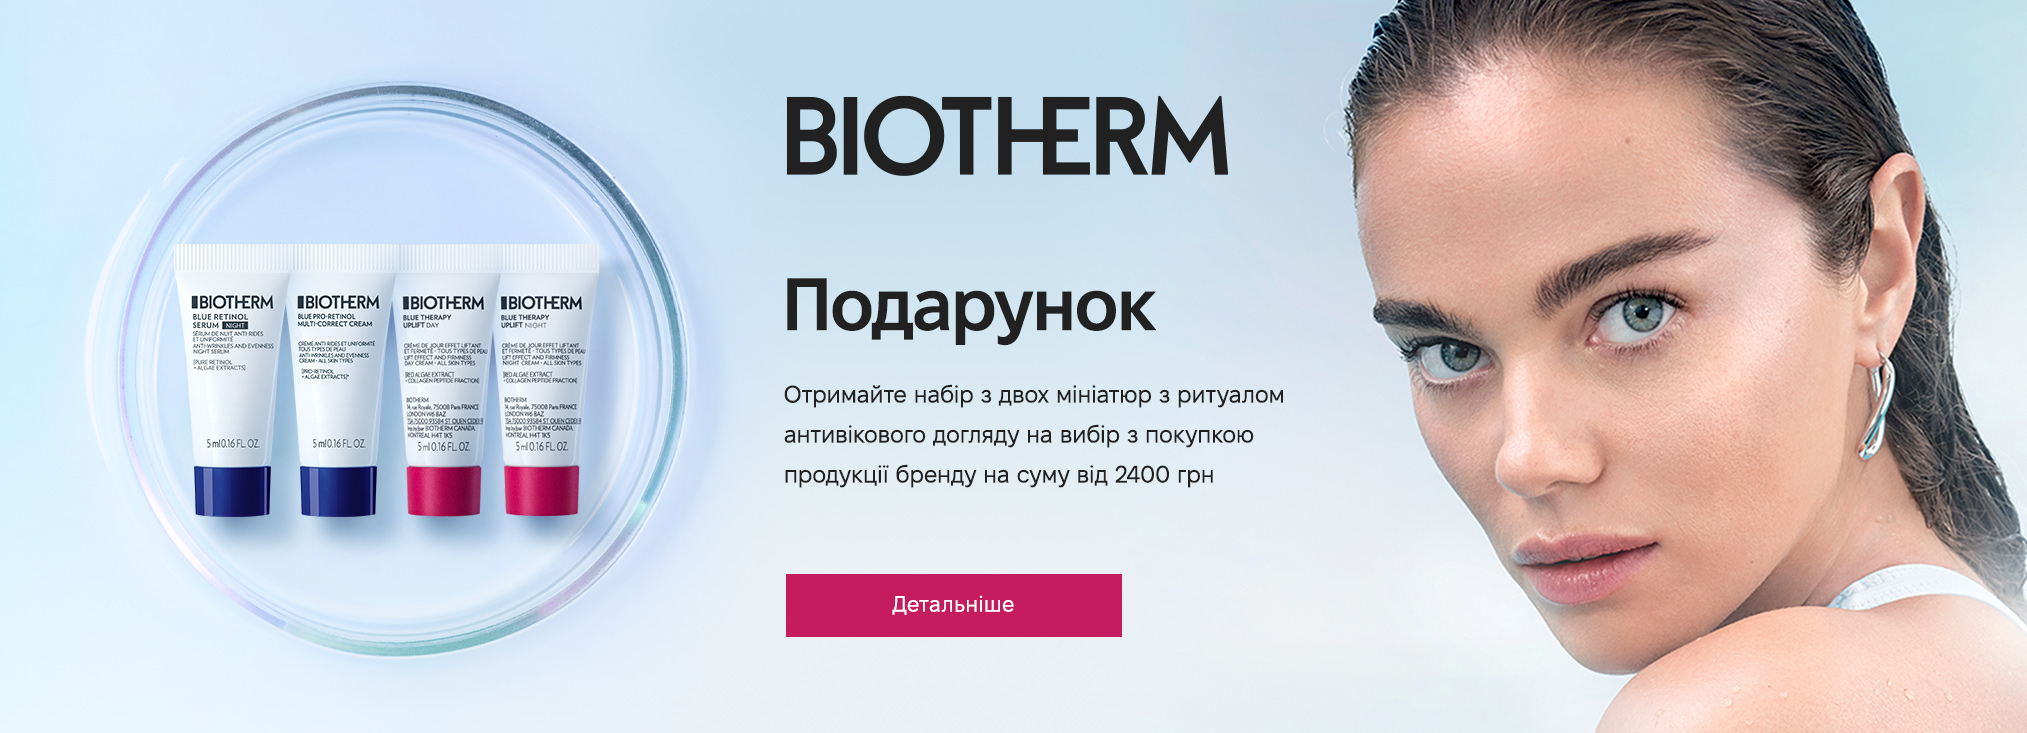 Biotherm20273